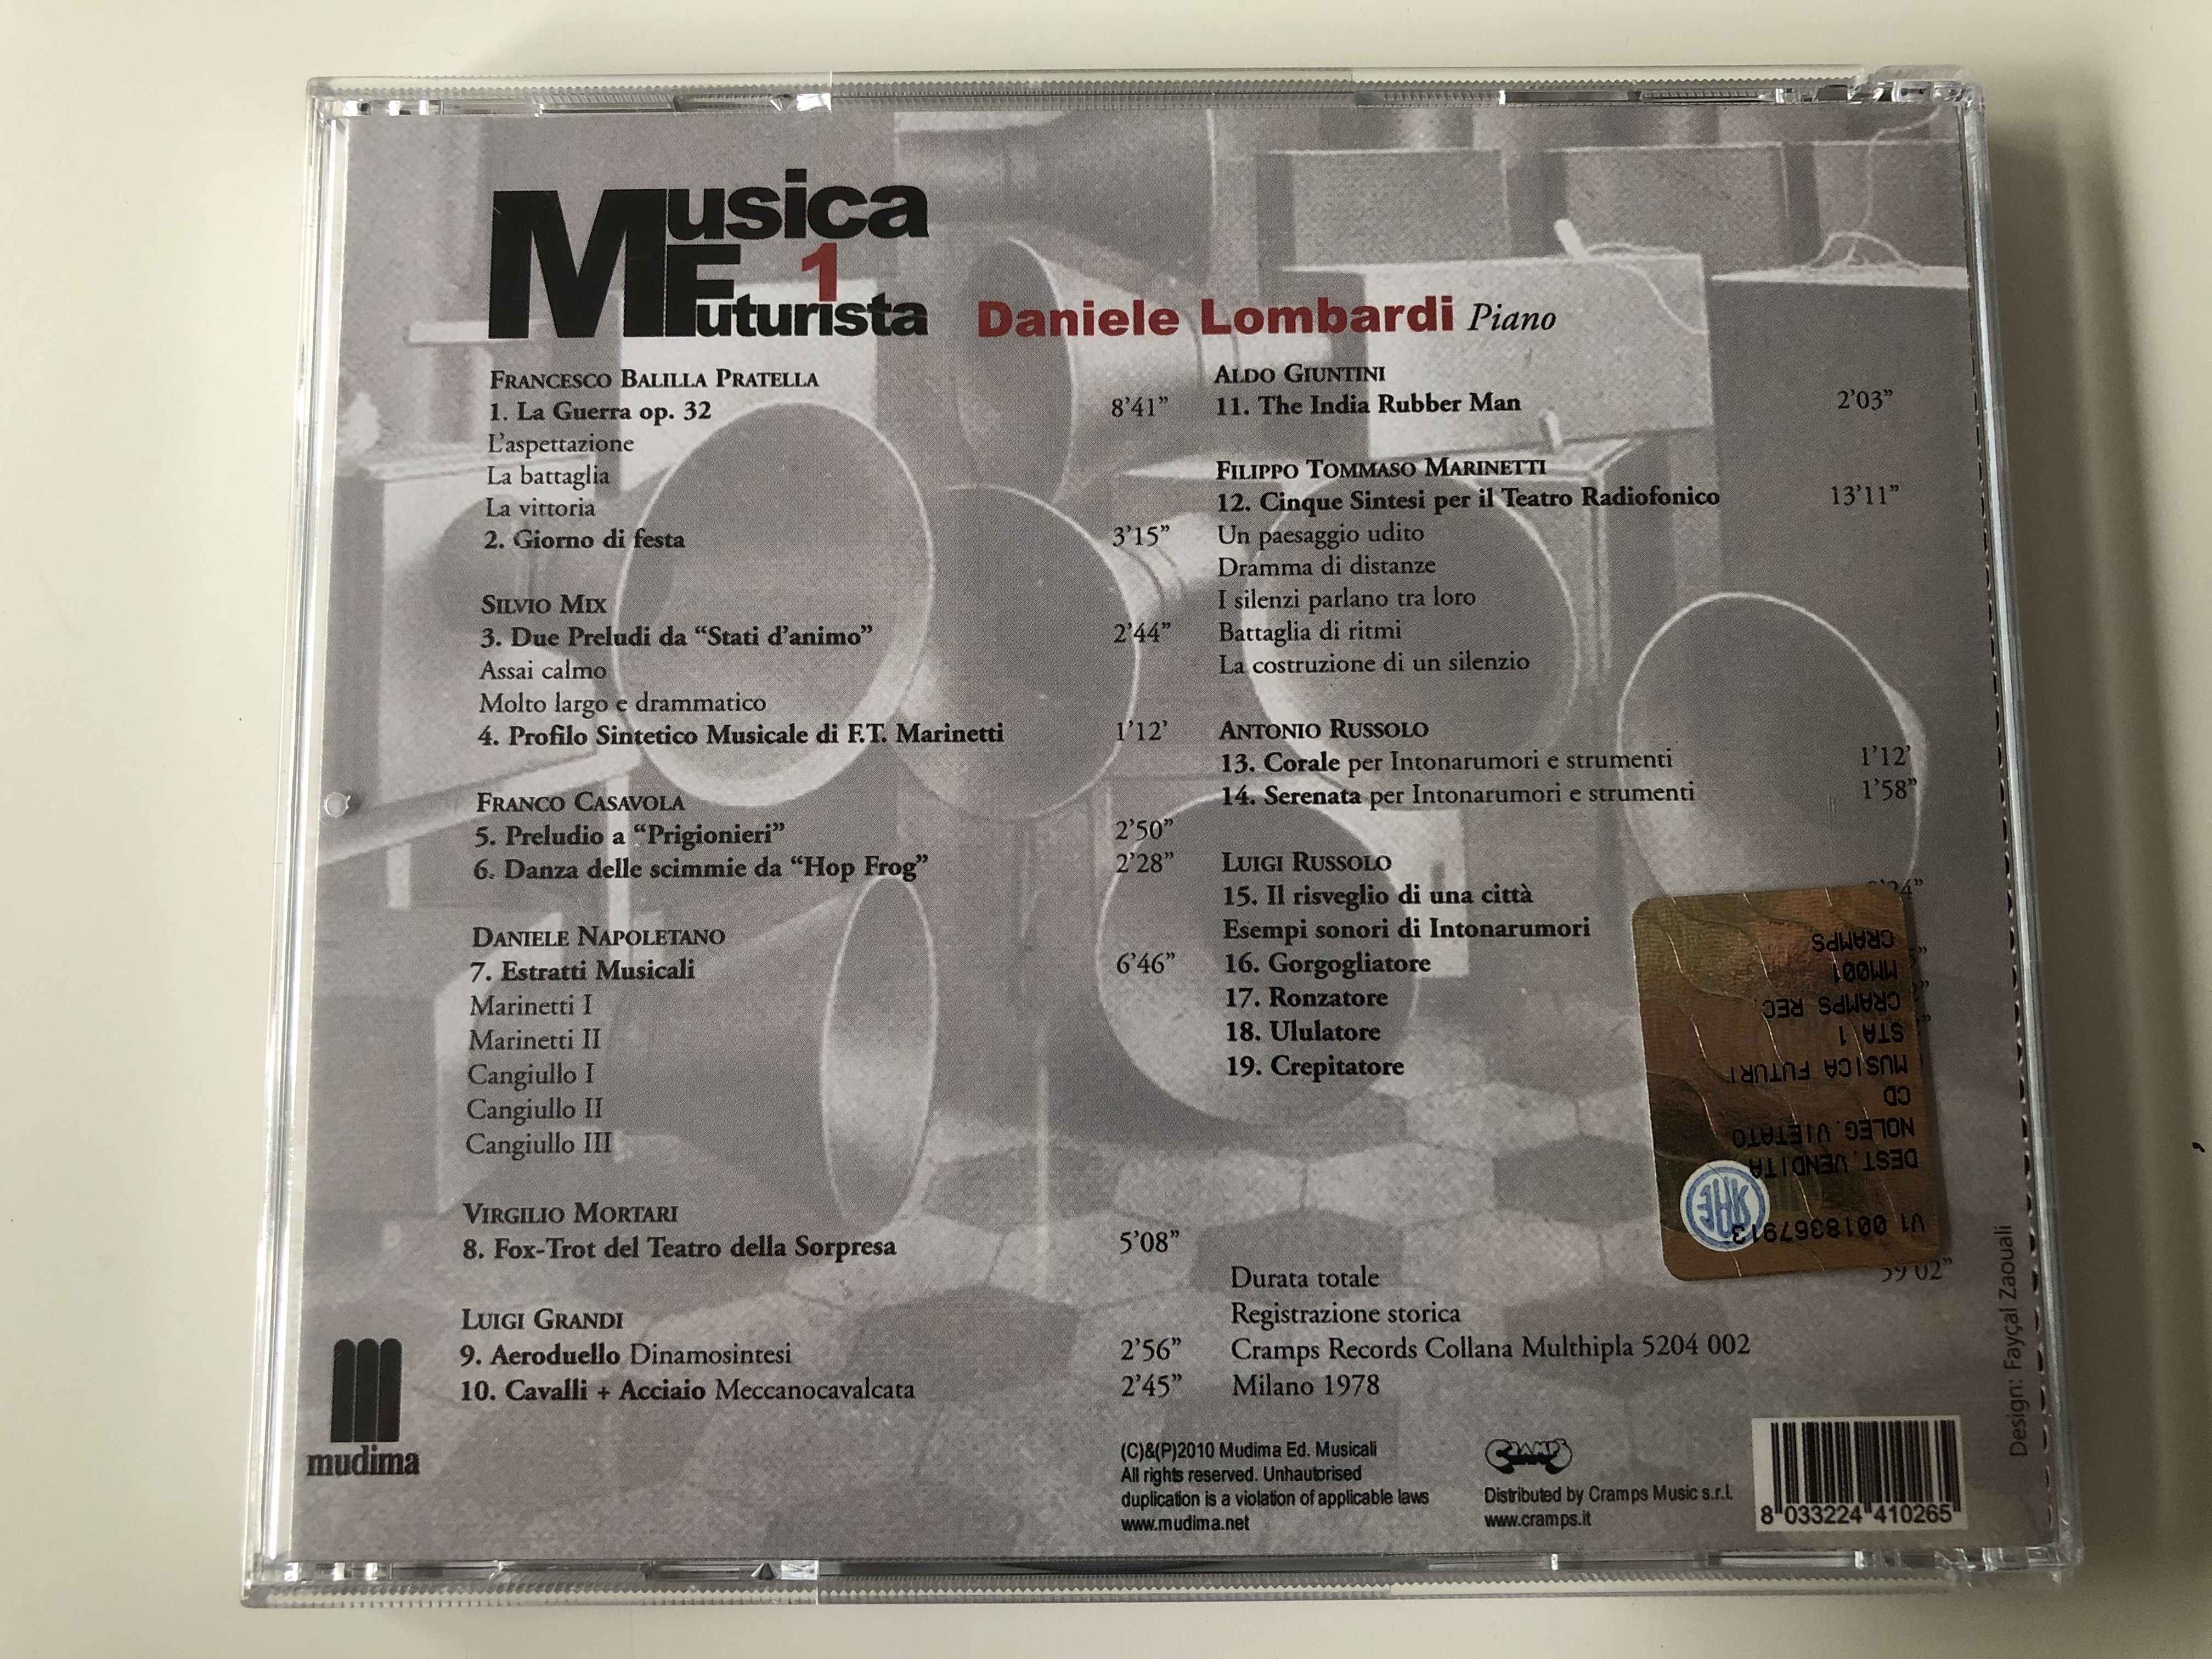 musica-futurista-1-daniele-lombardi-piano-testo-introduttivo-di-luigi-rognoni-mudima-ed.-musicali-audio-cd-2010-8033224410265-15-.jpg